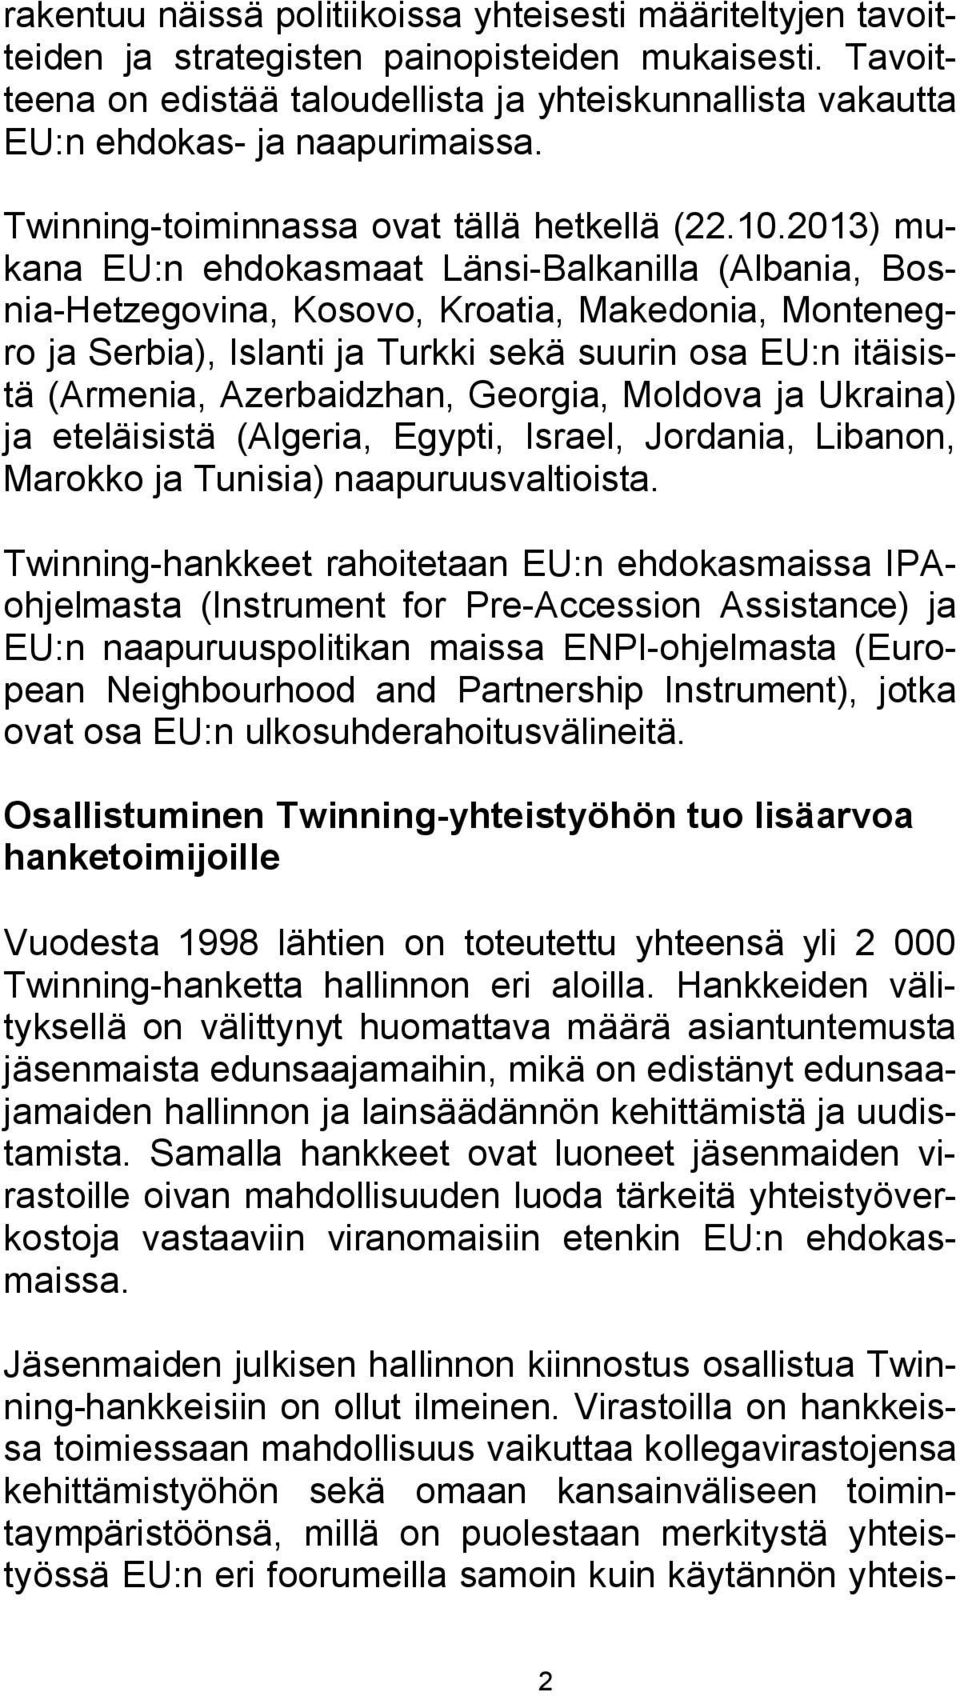 2013) mukana EU:n ehdokasmaat Länsi-Balkanilla (Albania, Bosnia-Hetzegovina, Kosovo, Kroatia, Makedonia, Montenegro ja Serbia), Islanti ja Turkki sekä suurin osa EU:n itäisistä (Armenia,